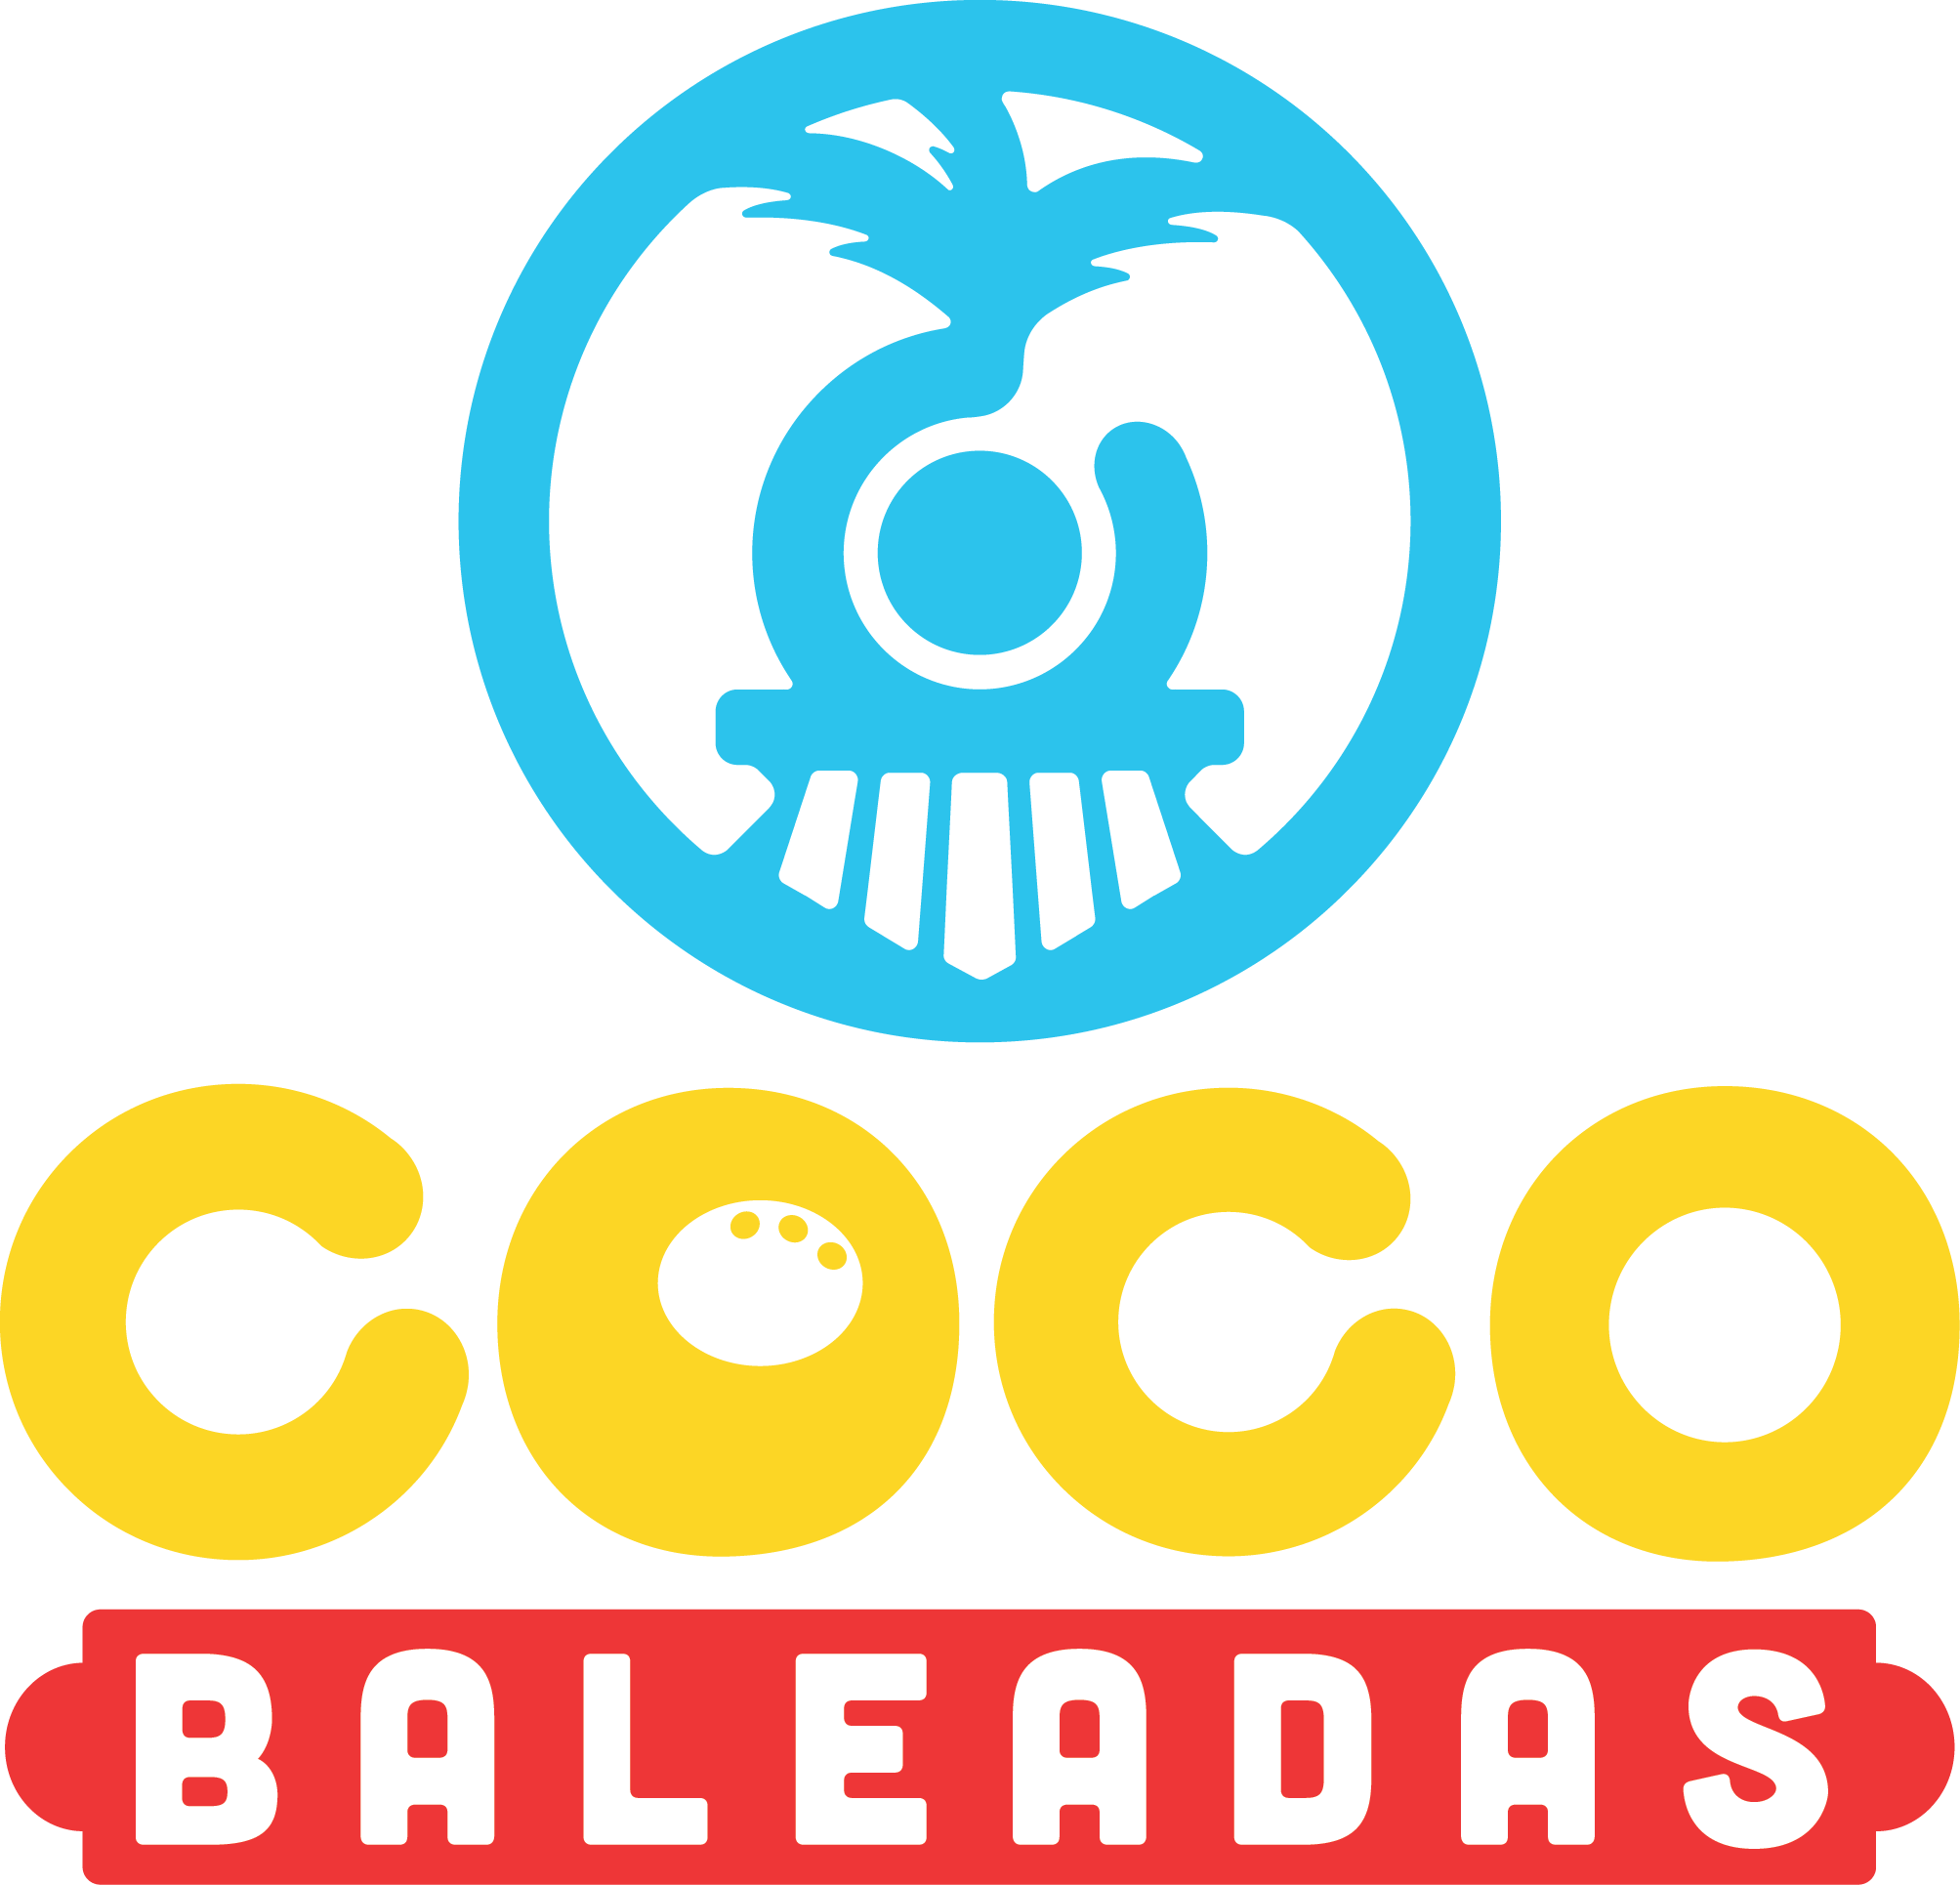 Recorrido Coco Baleadas 